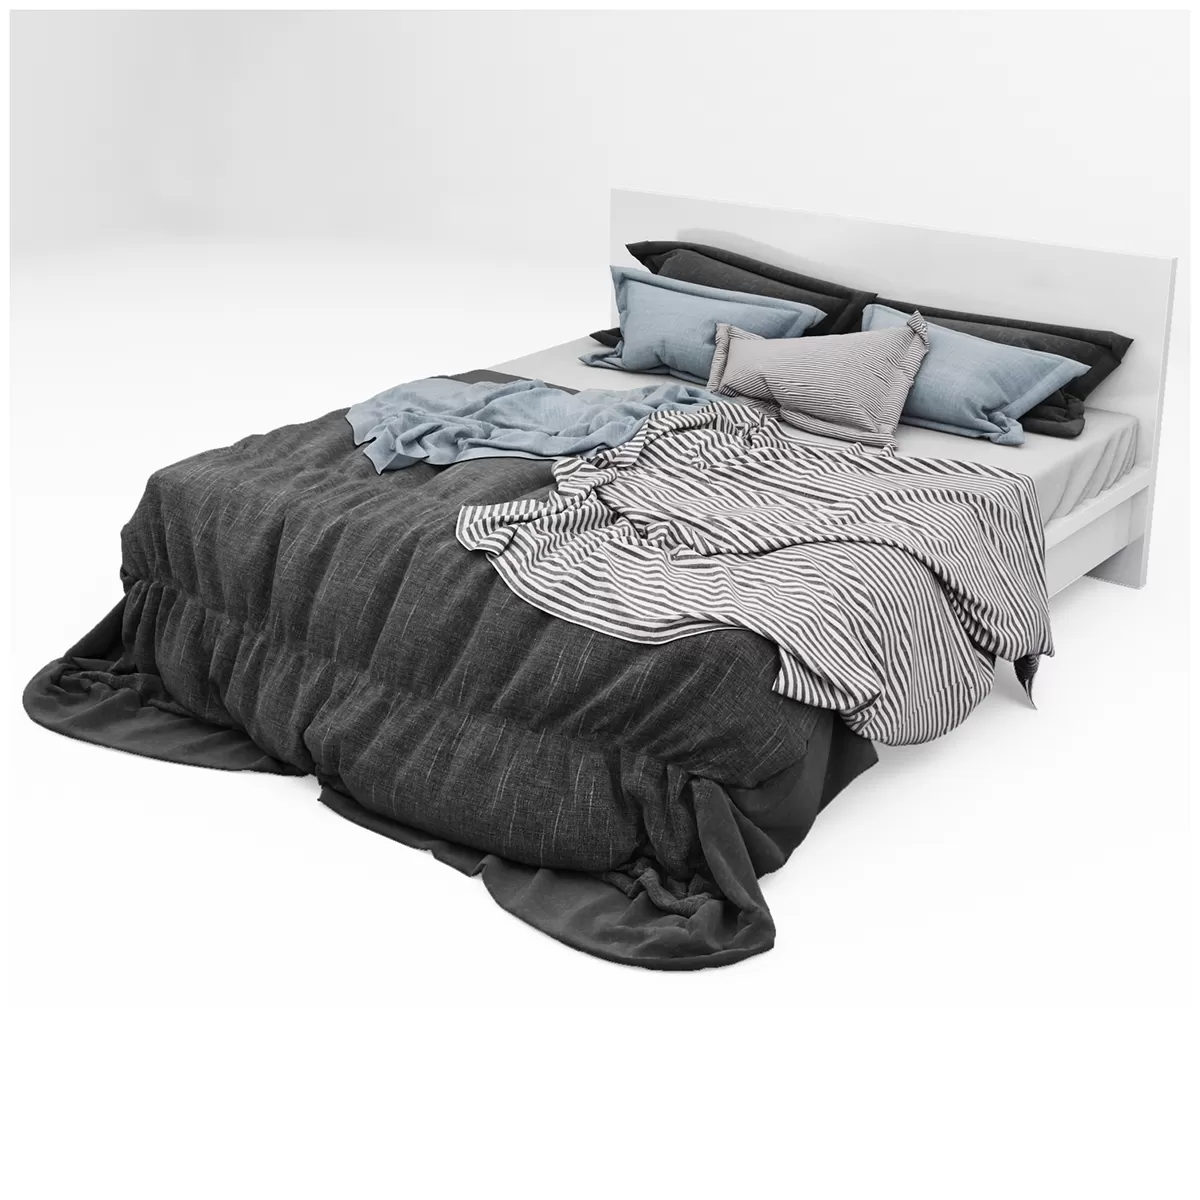 3DSKYMODEL – Bed – 2658